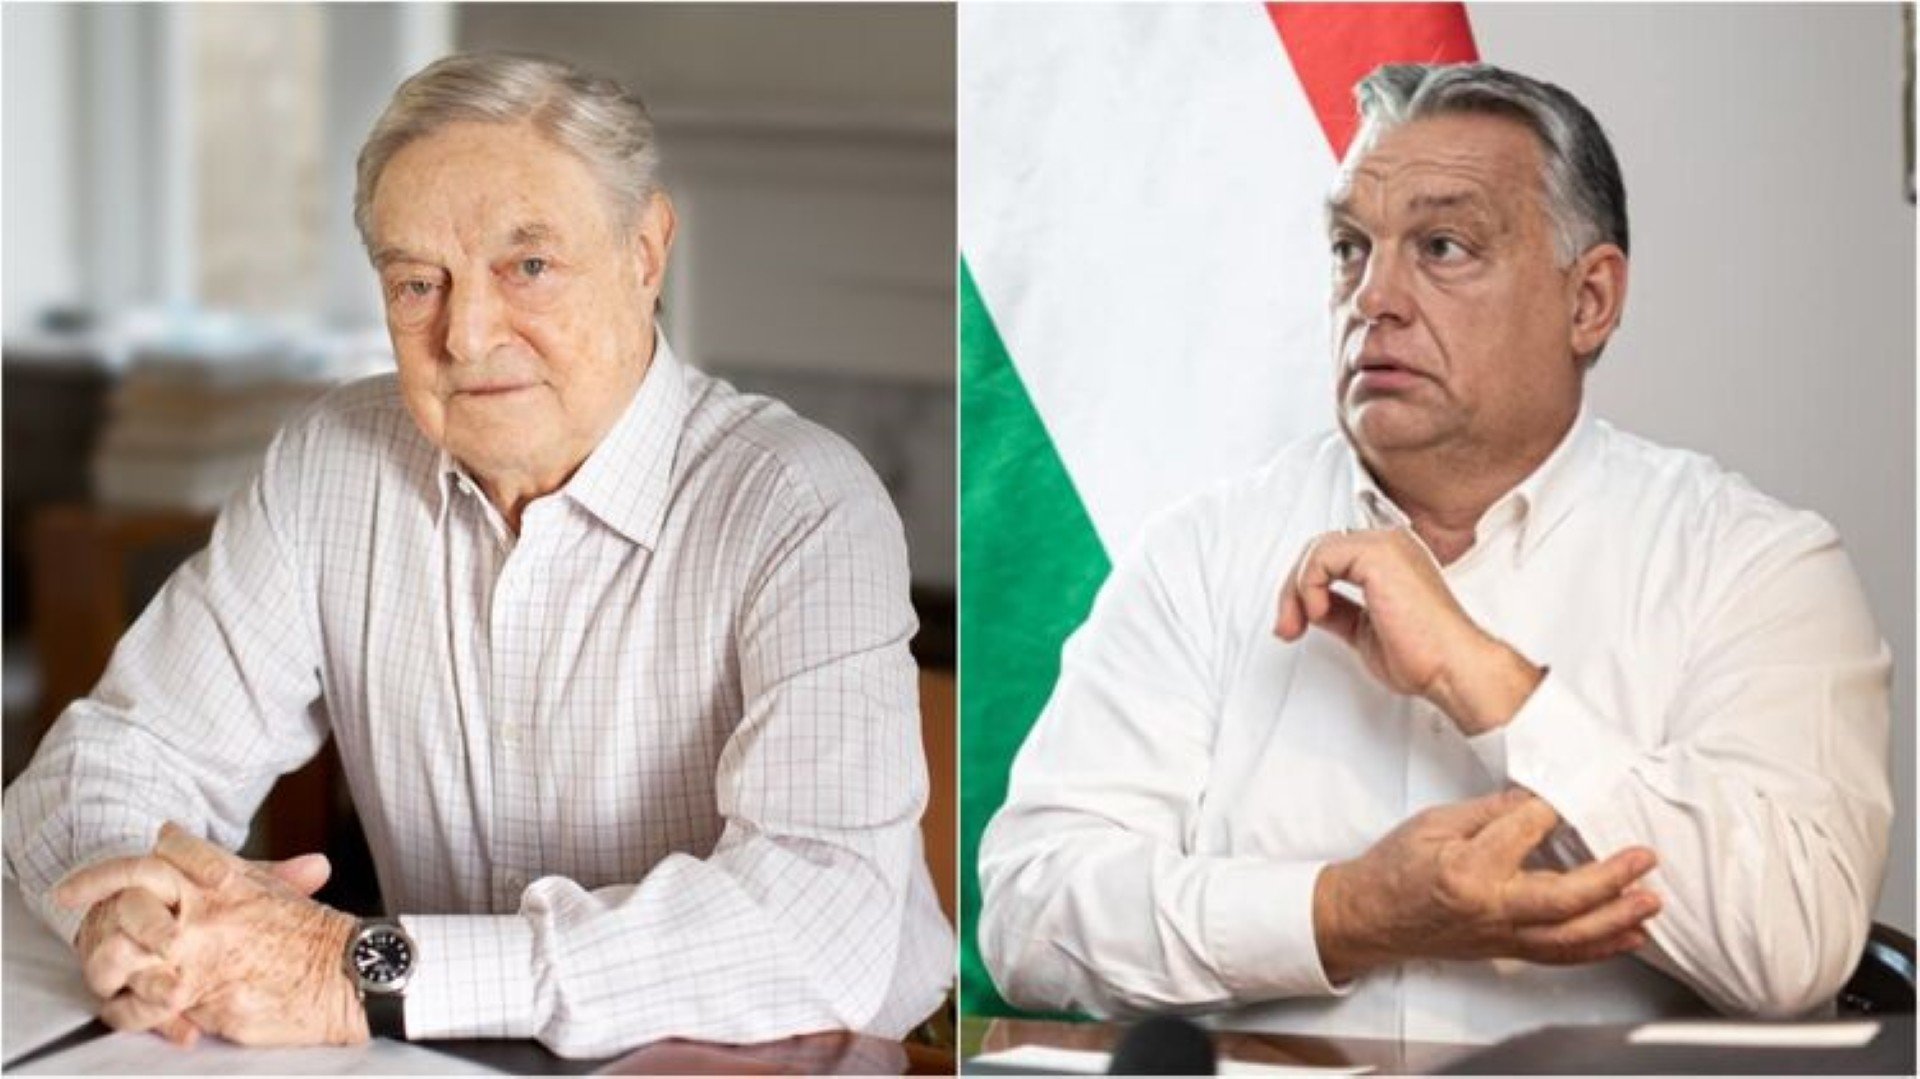 Конфликт "небожителей": Сорос — преступник, Орбан — диктатор